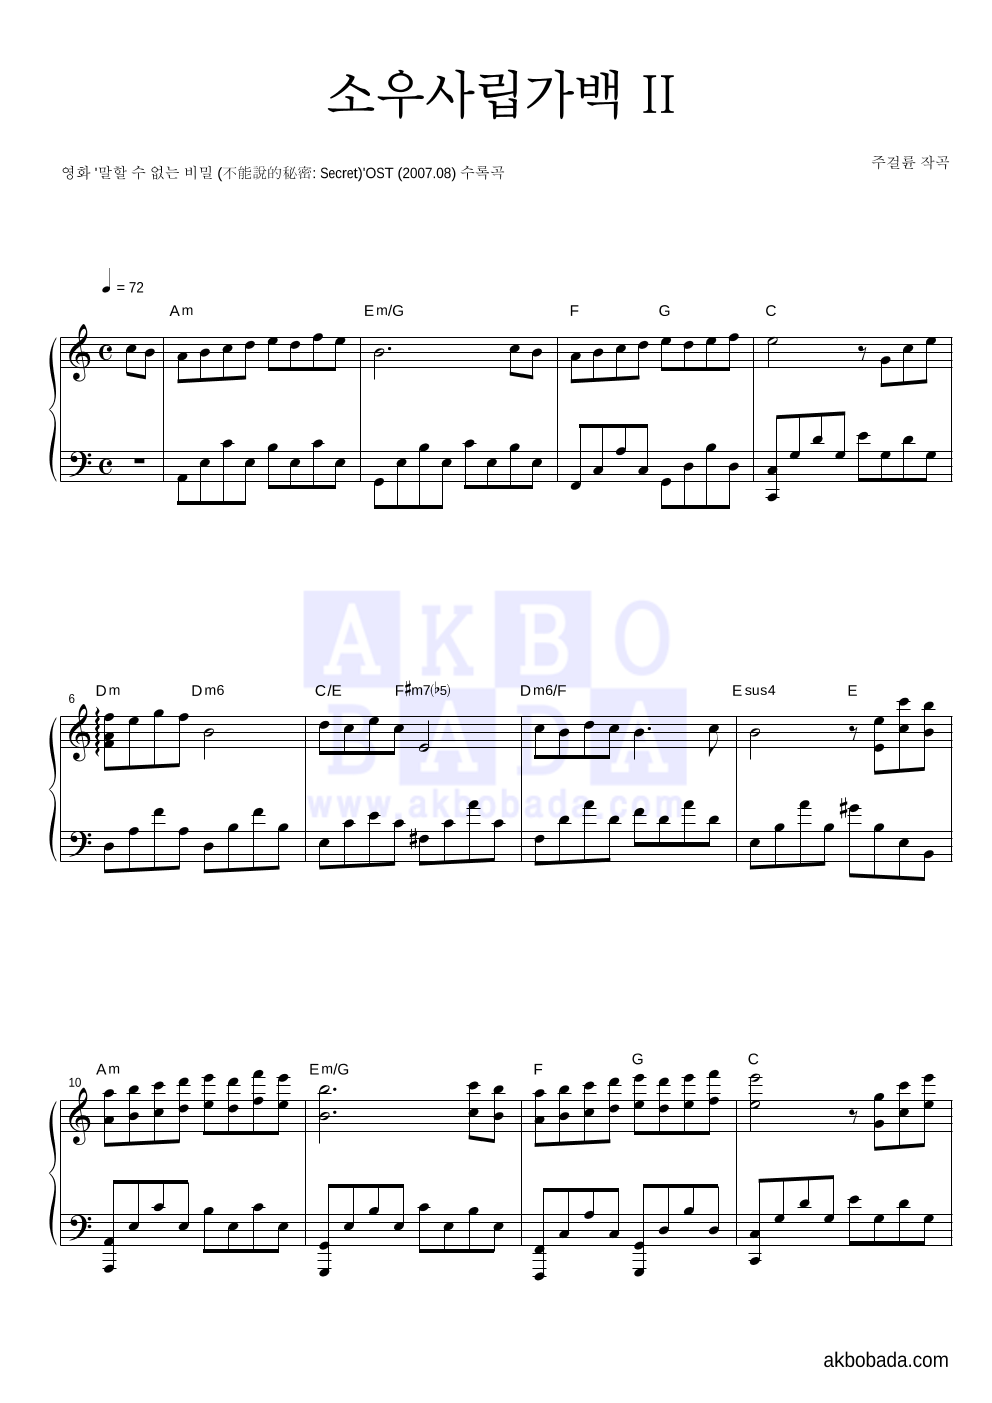 말할 수 없는 비밀 OST - 소우사립가백 II (小雨寫立可白 II) 피아노 2단 악보 